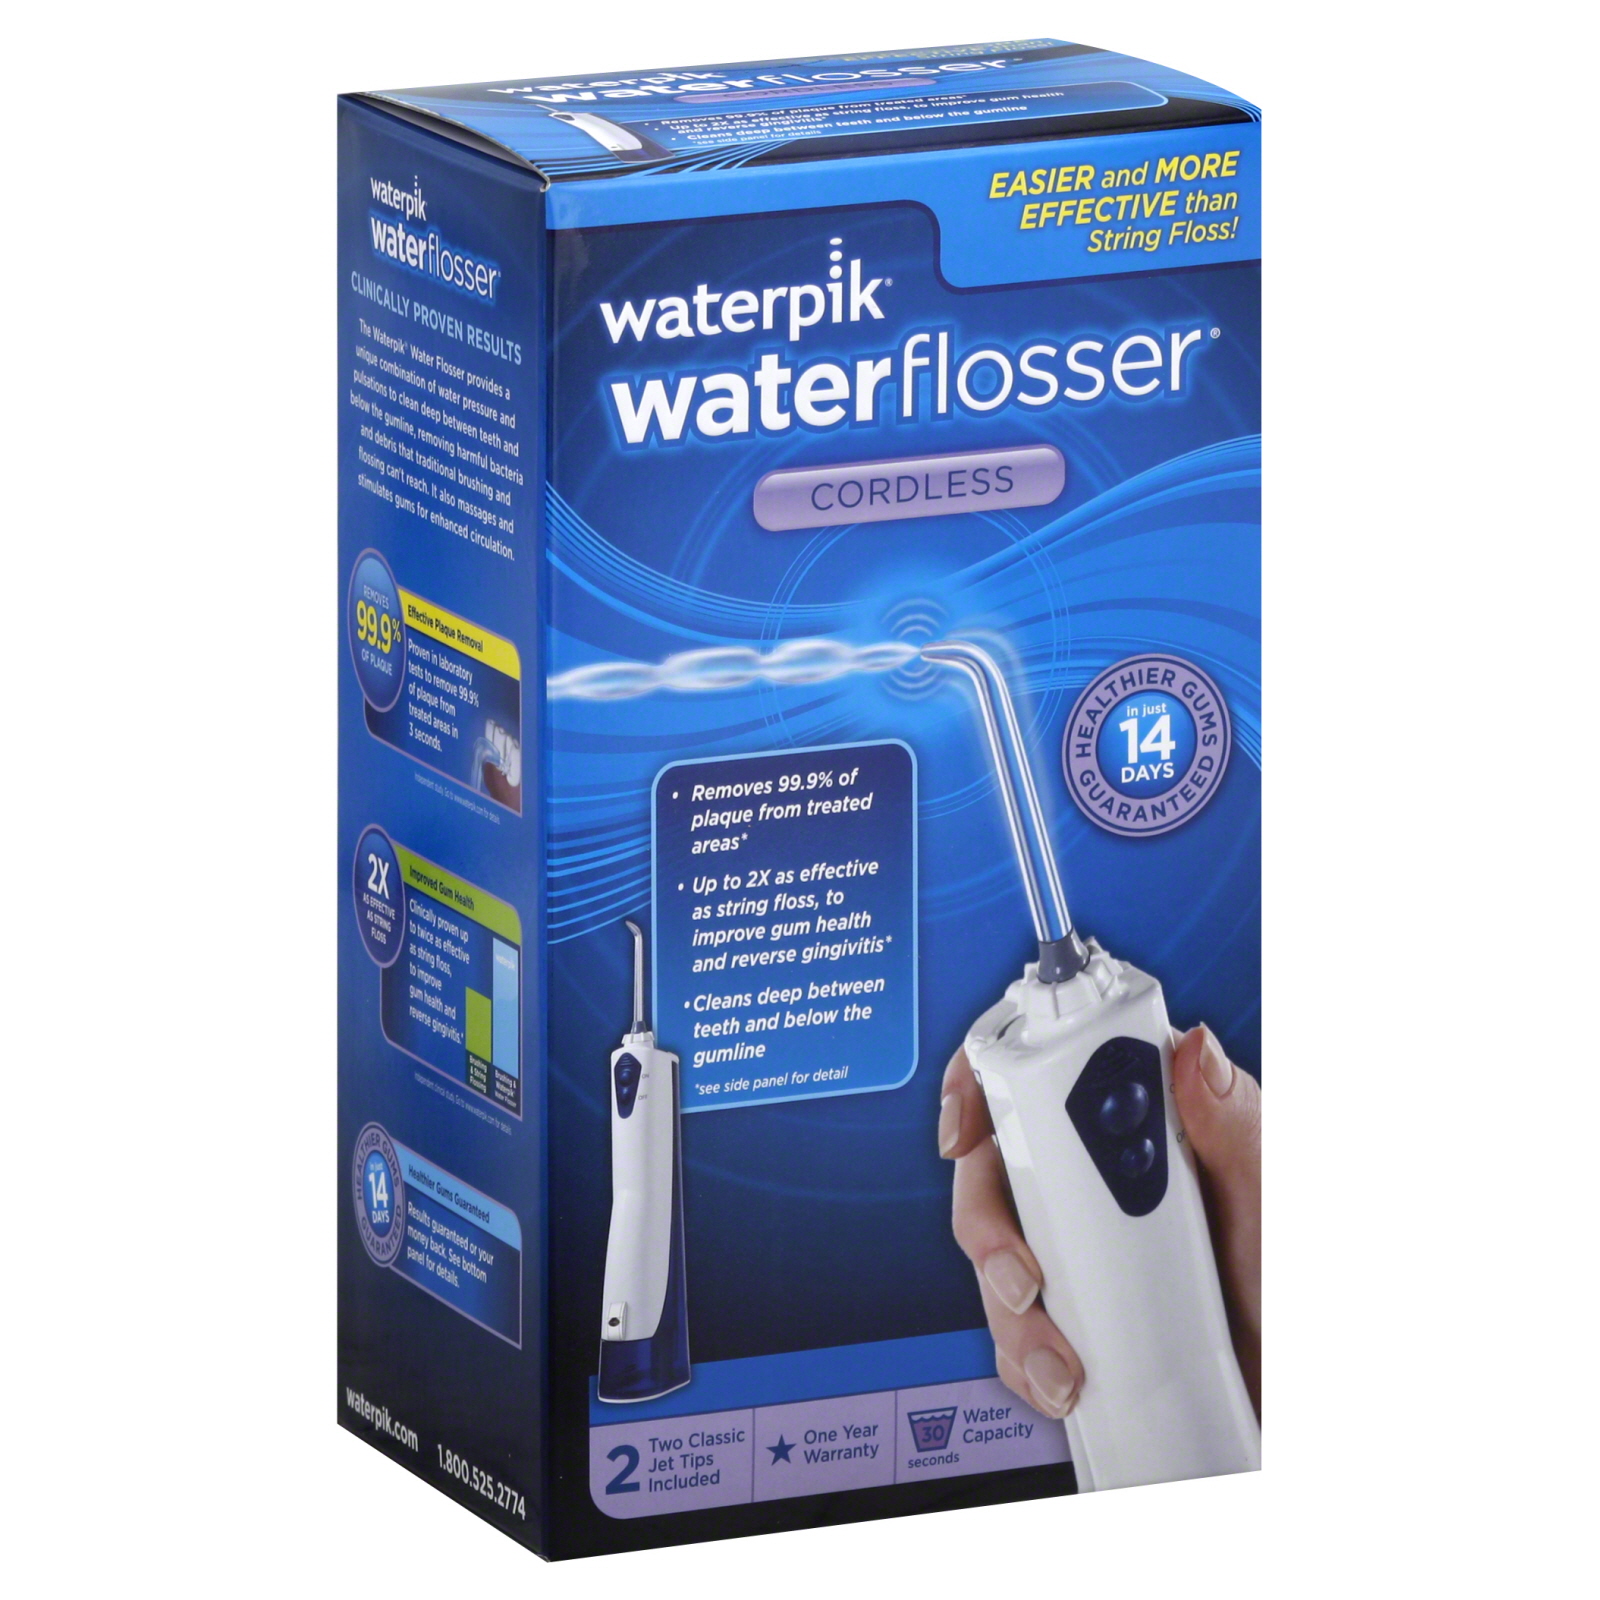 Waterpik Water Flosser, Cordless, 1 water flosser